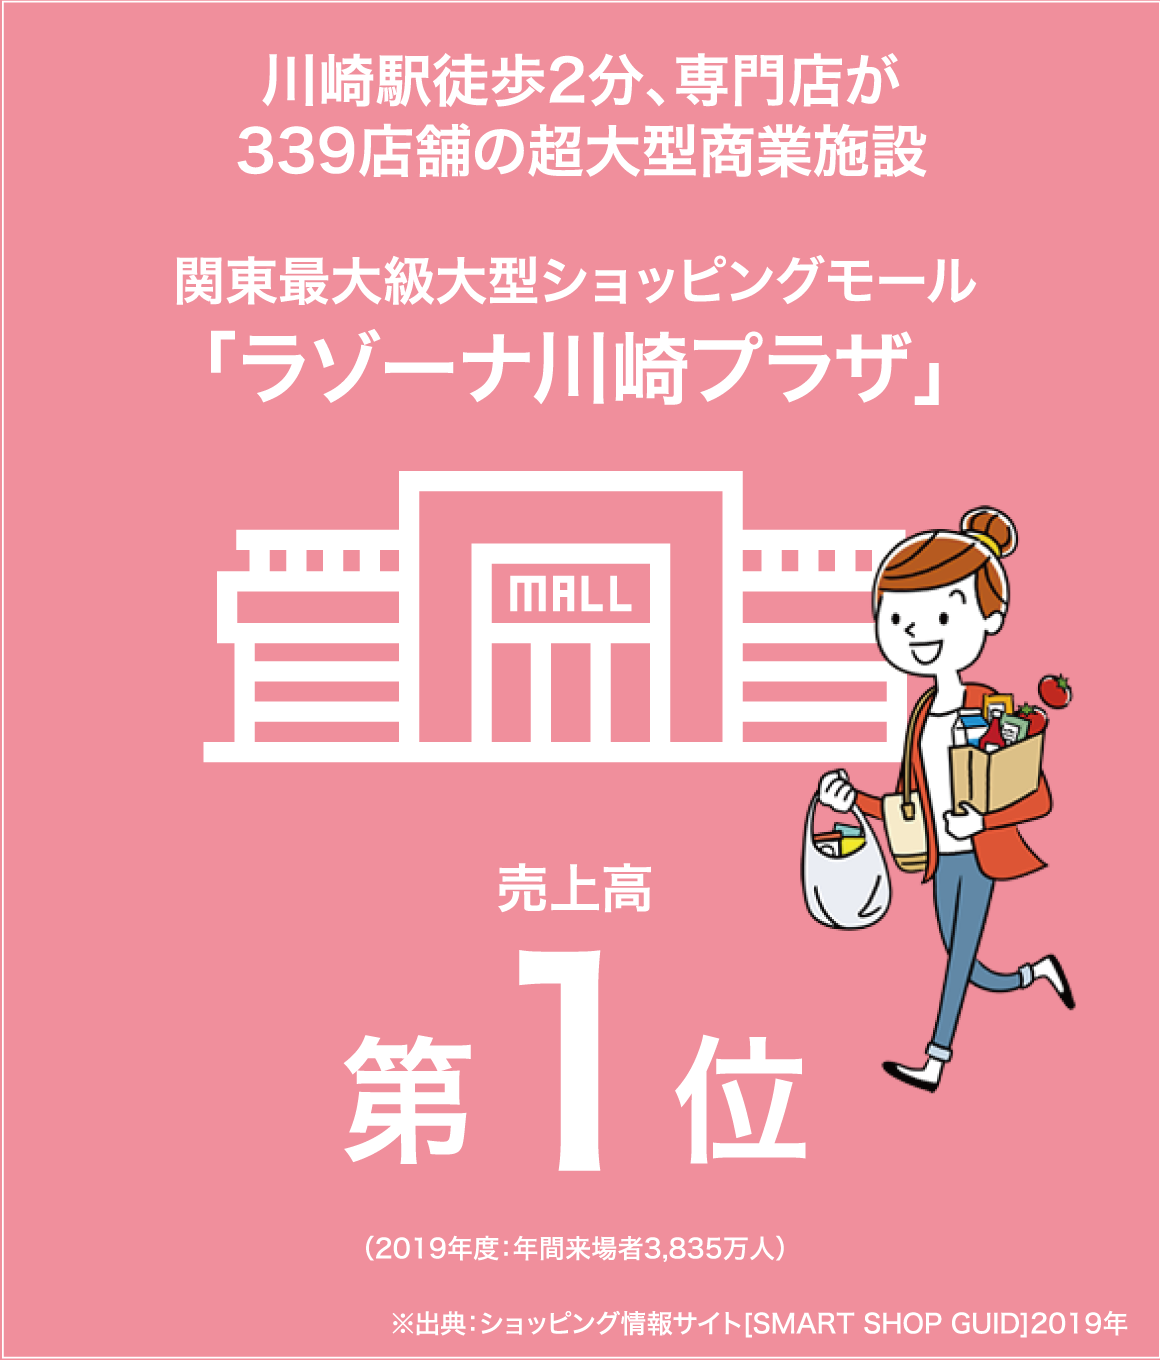 川崎駅徒歩2分、専門店が339店舗の超大型商業施設